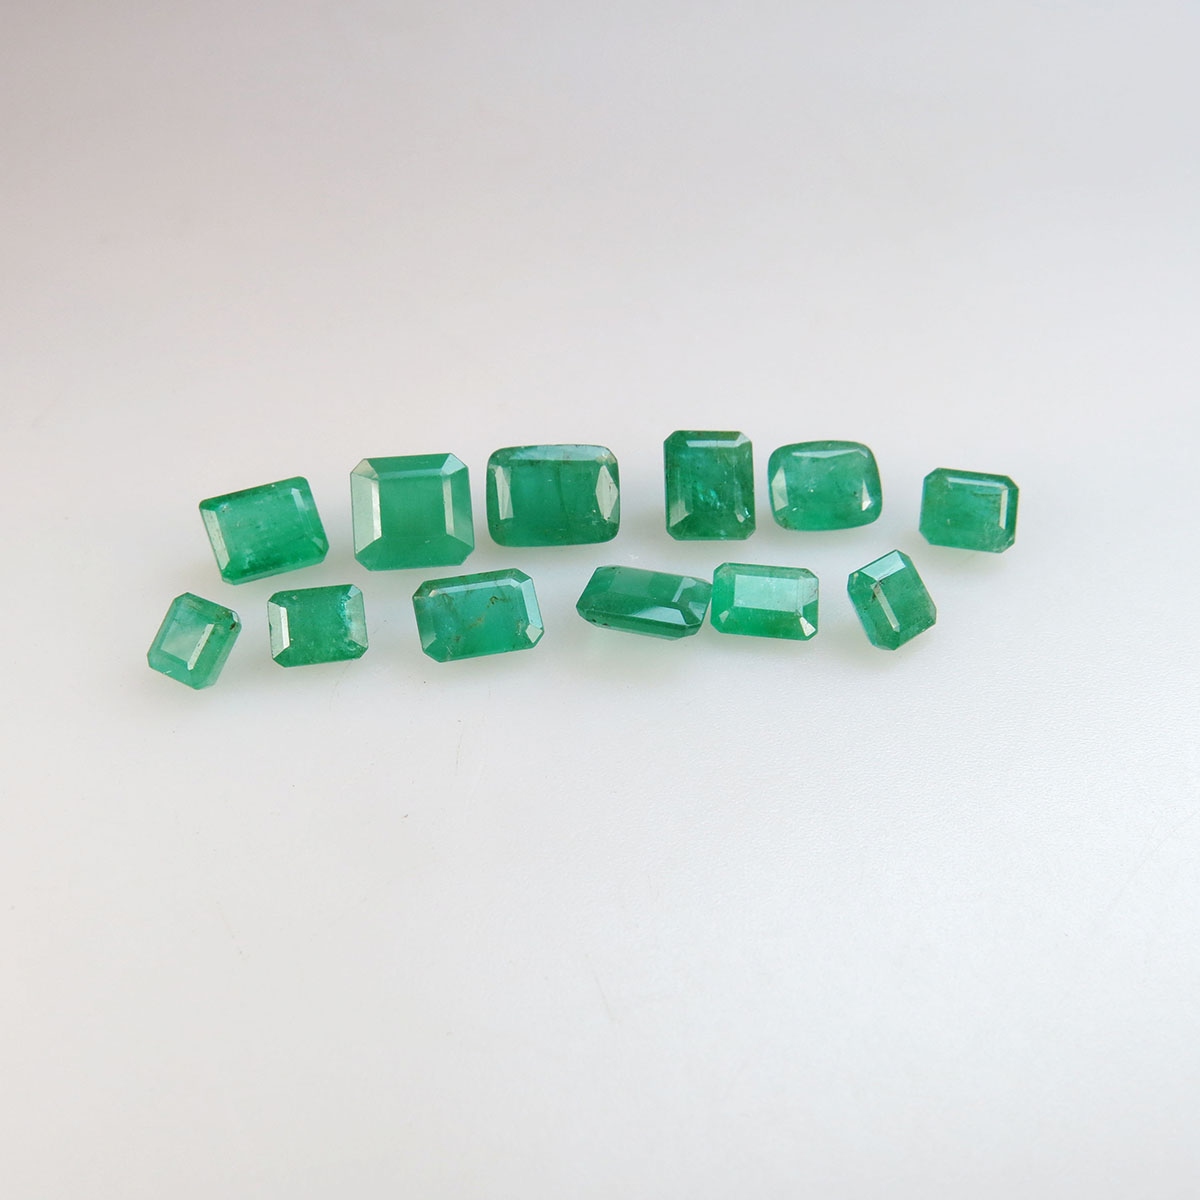 12 Emerald Cut Emeralds